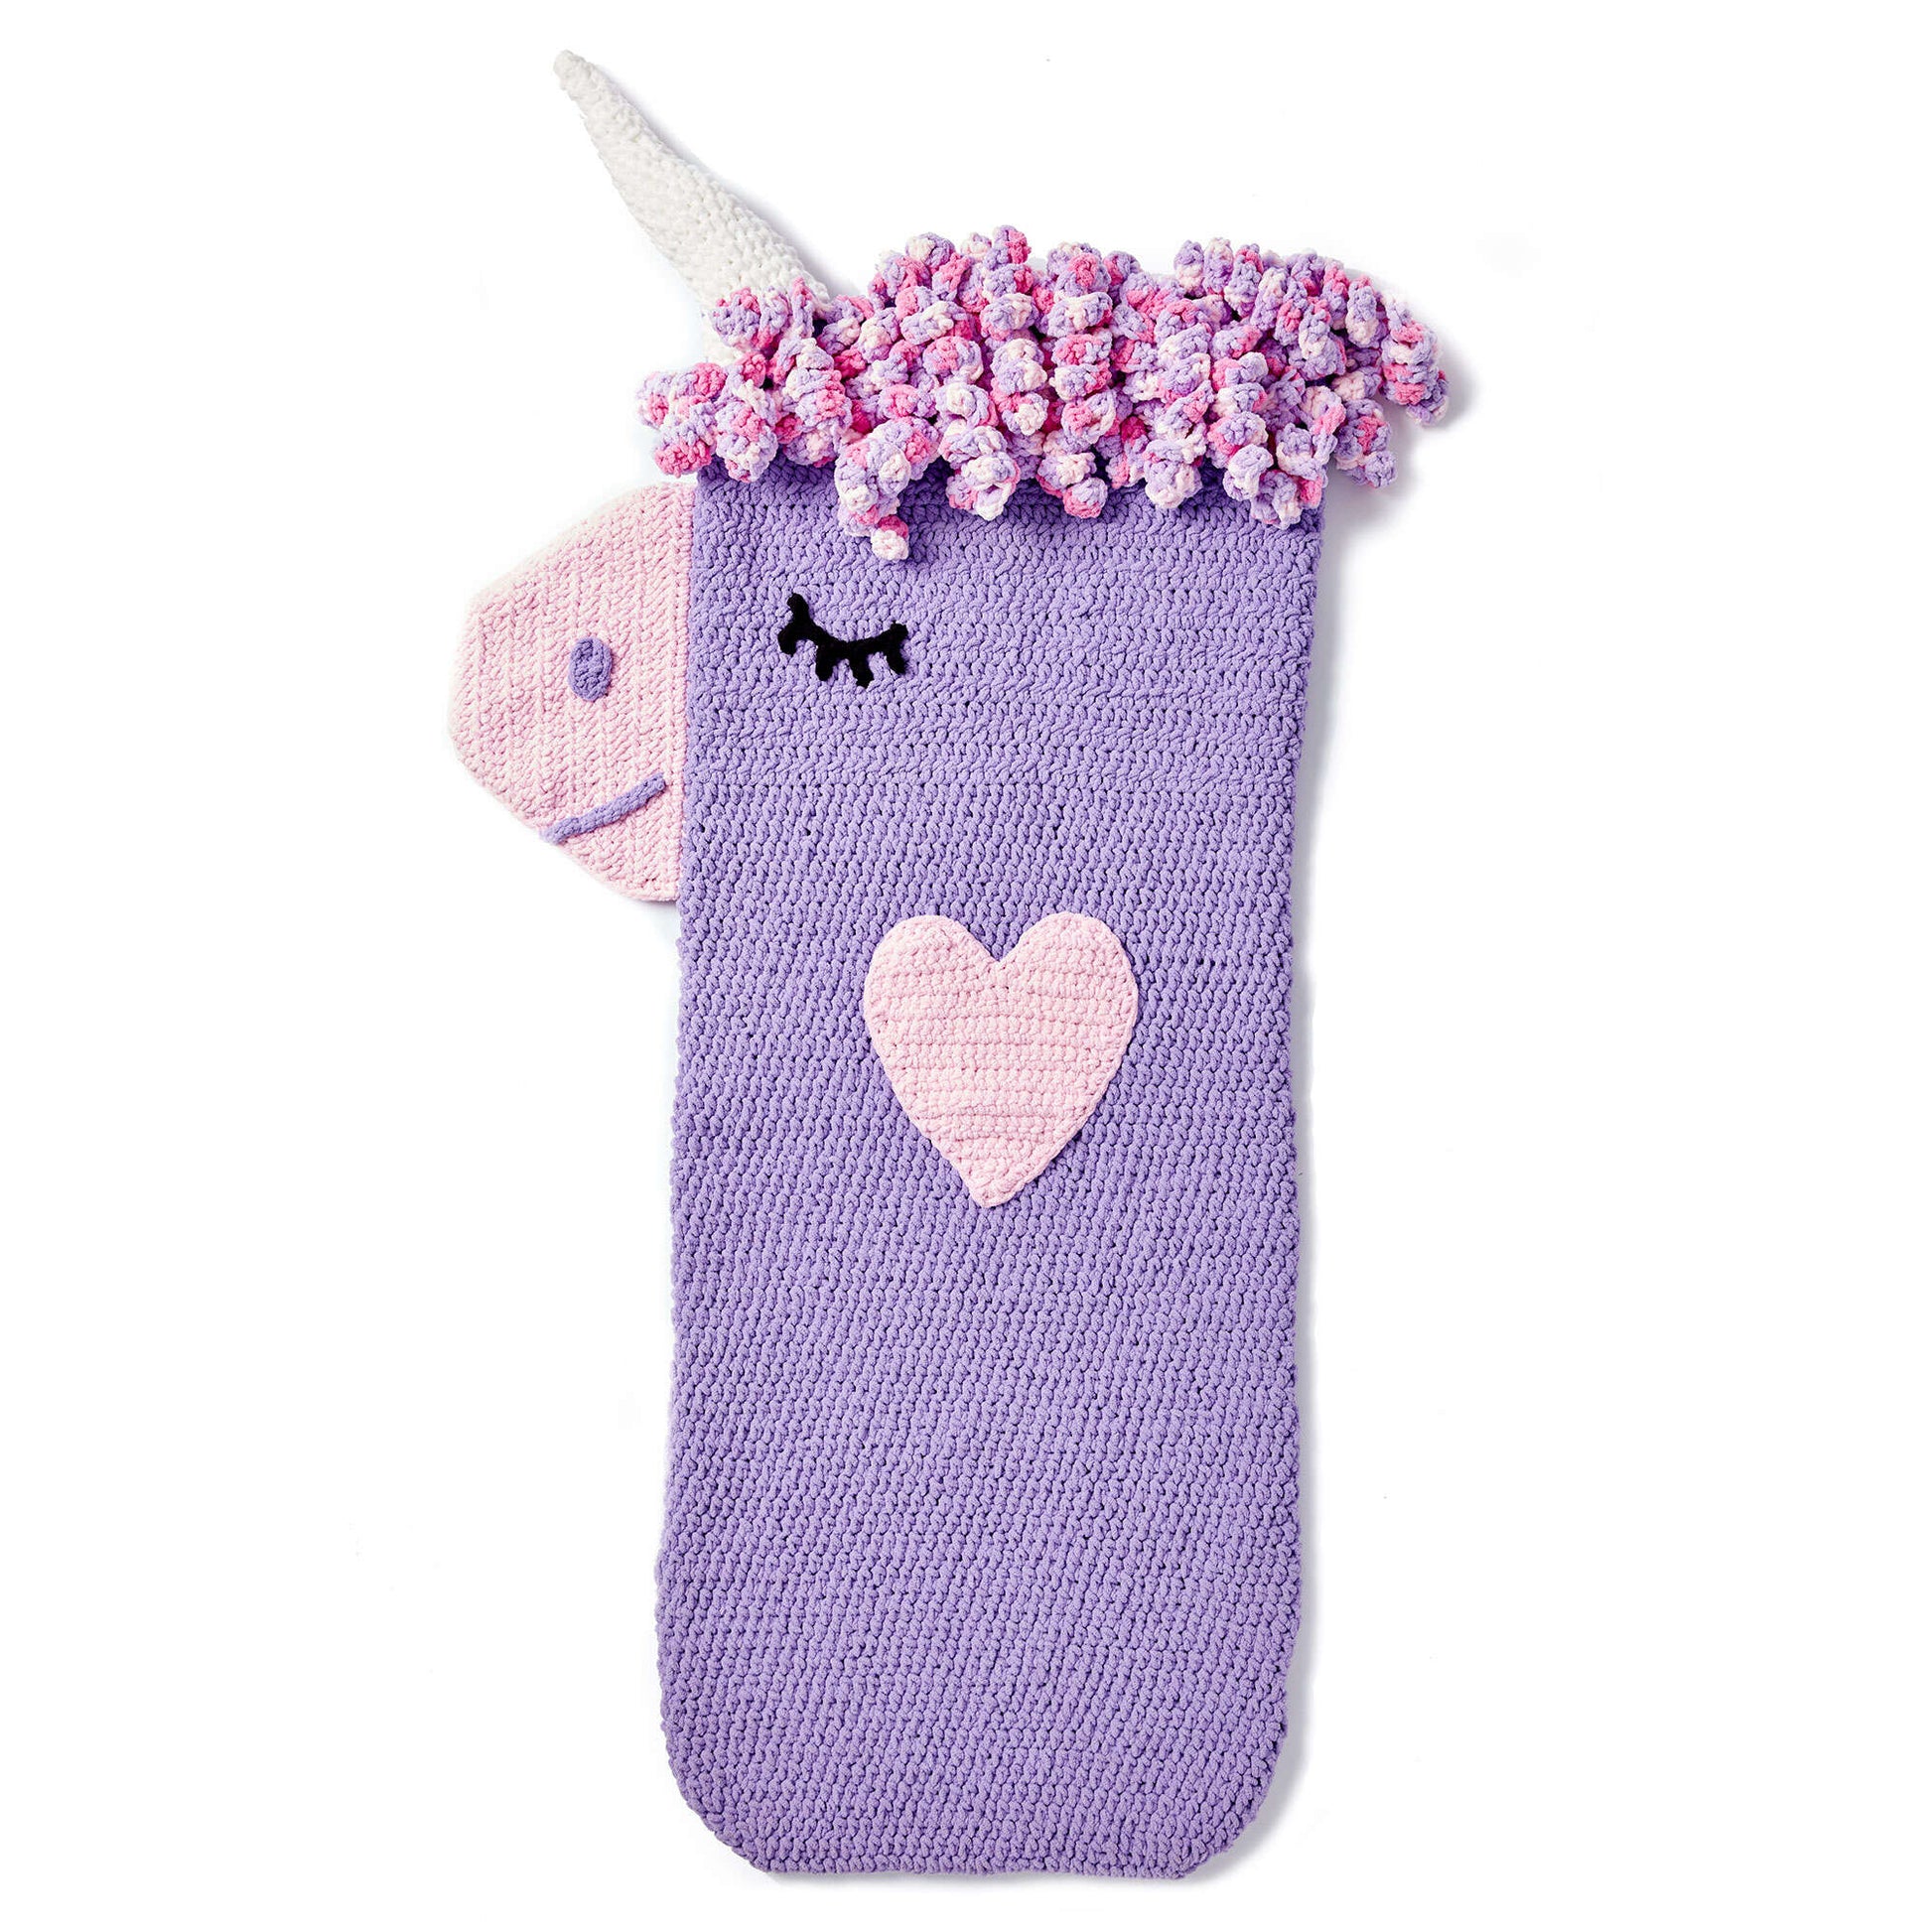 Bernat Crochet Unicorn Snuggle Sack Crochet Blanket made in Bernat Baby Blanket yarn